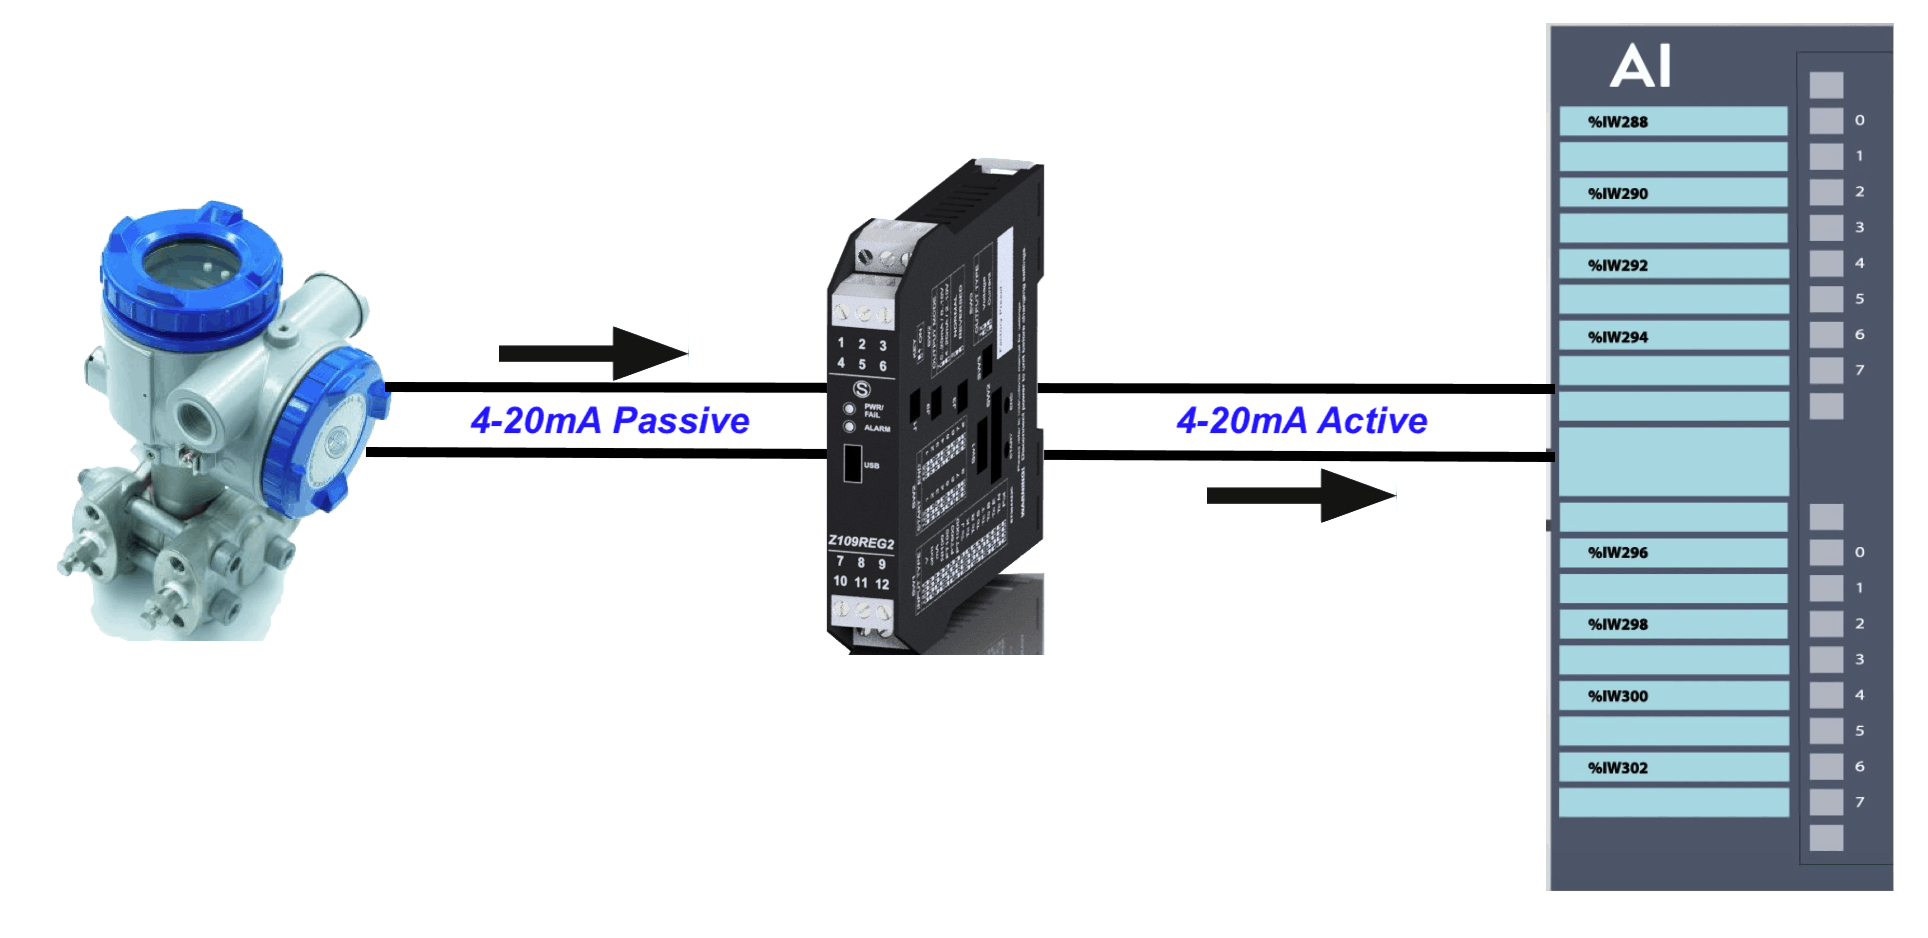 Bộ chuyển đổi tín hiệu 4-20mA Active – Passive Seneca Z109REG2-1